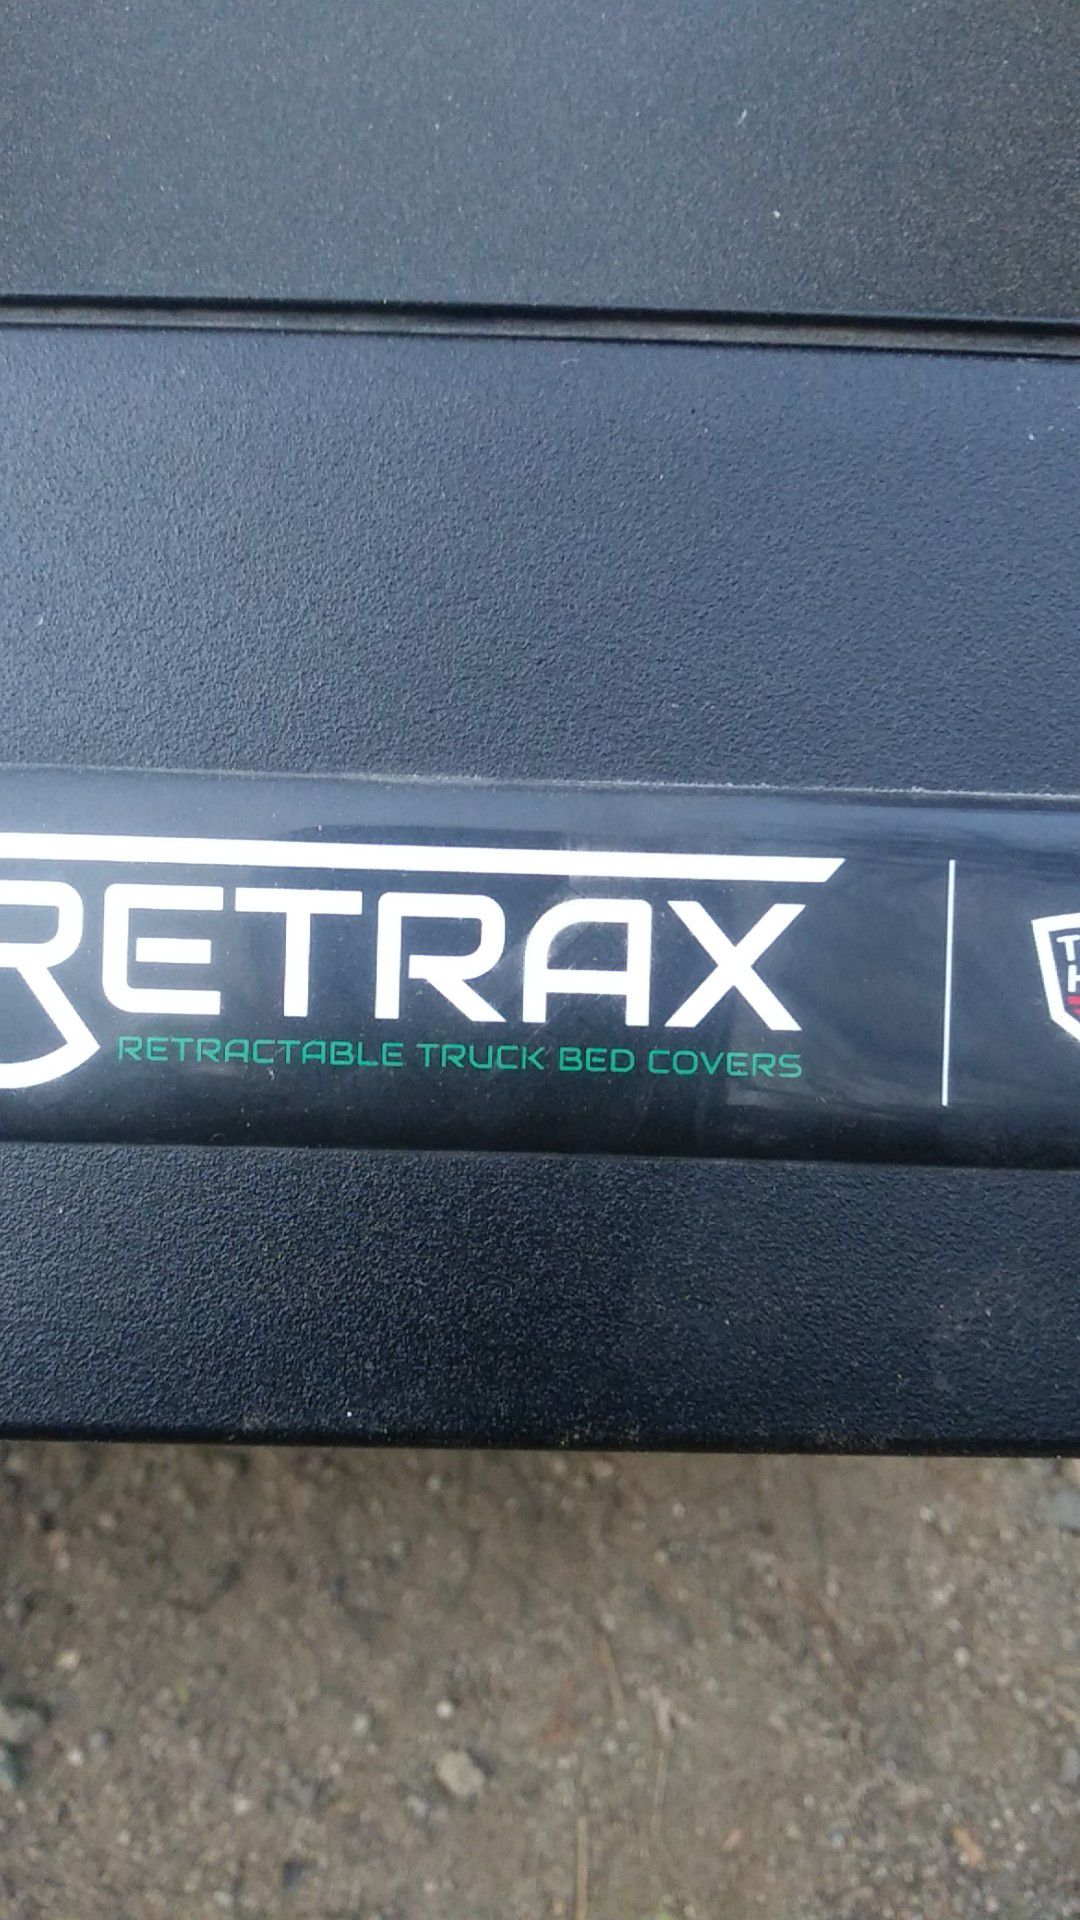 Retrax Retractable Truck Bed Cover